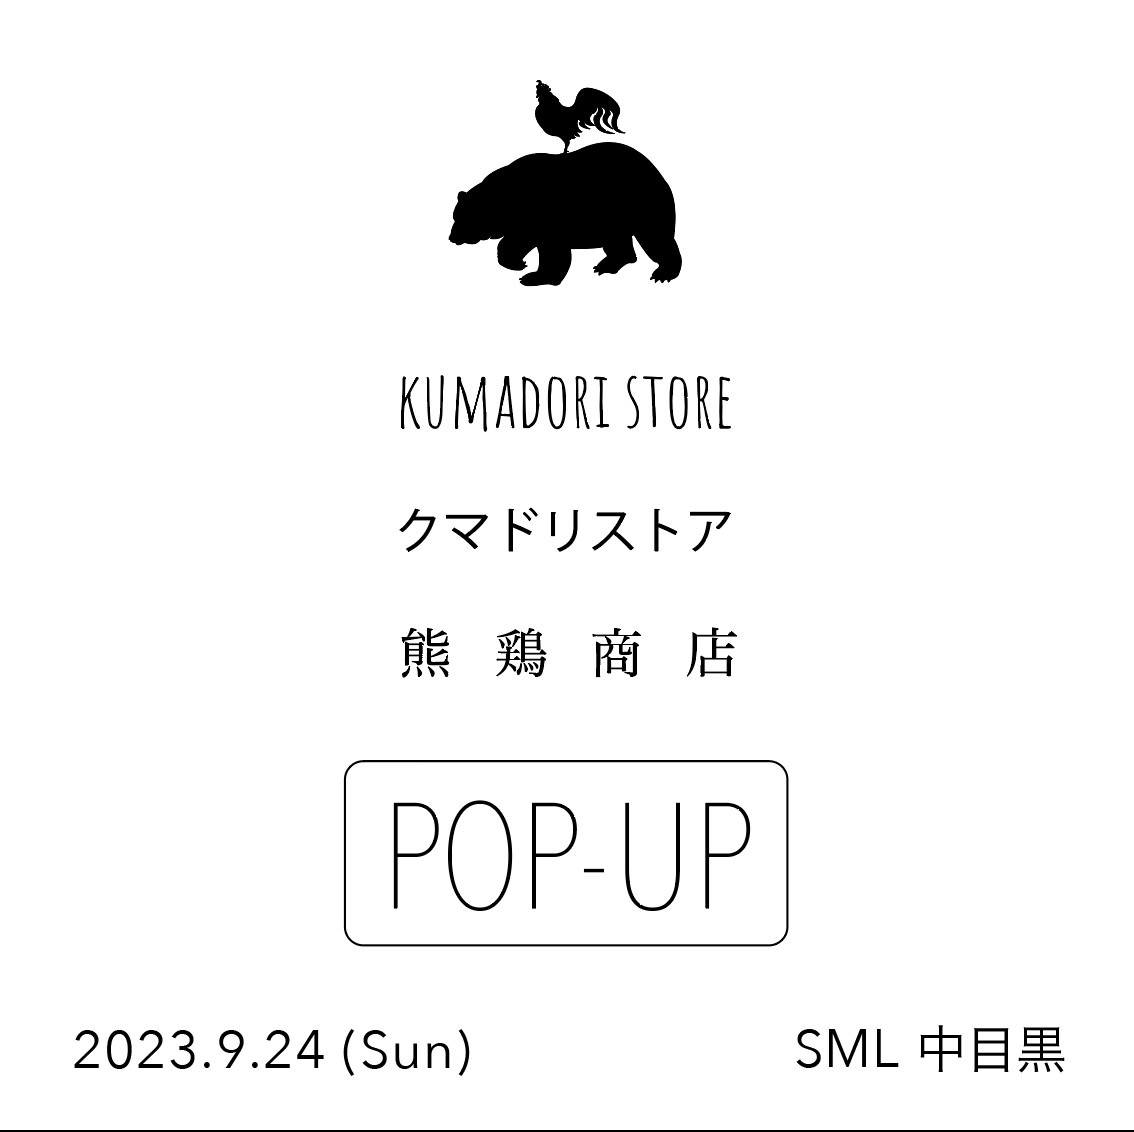 クマドリストア POP-UP at SML 中目黒 24.09.24